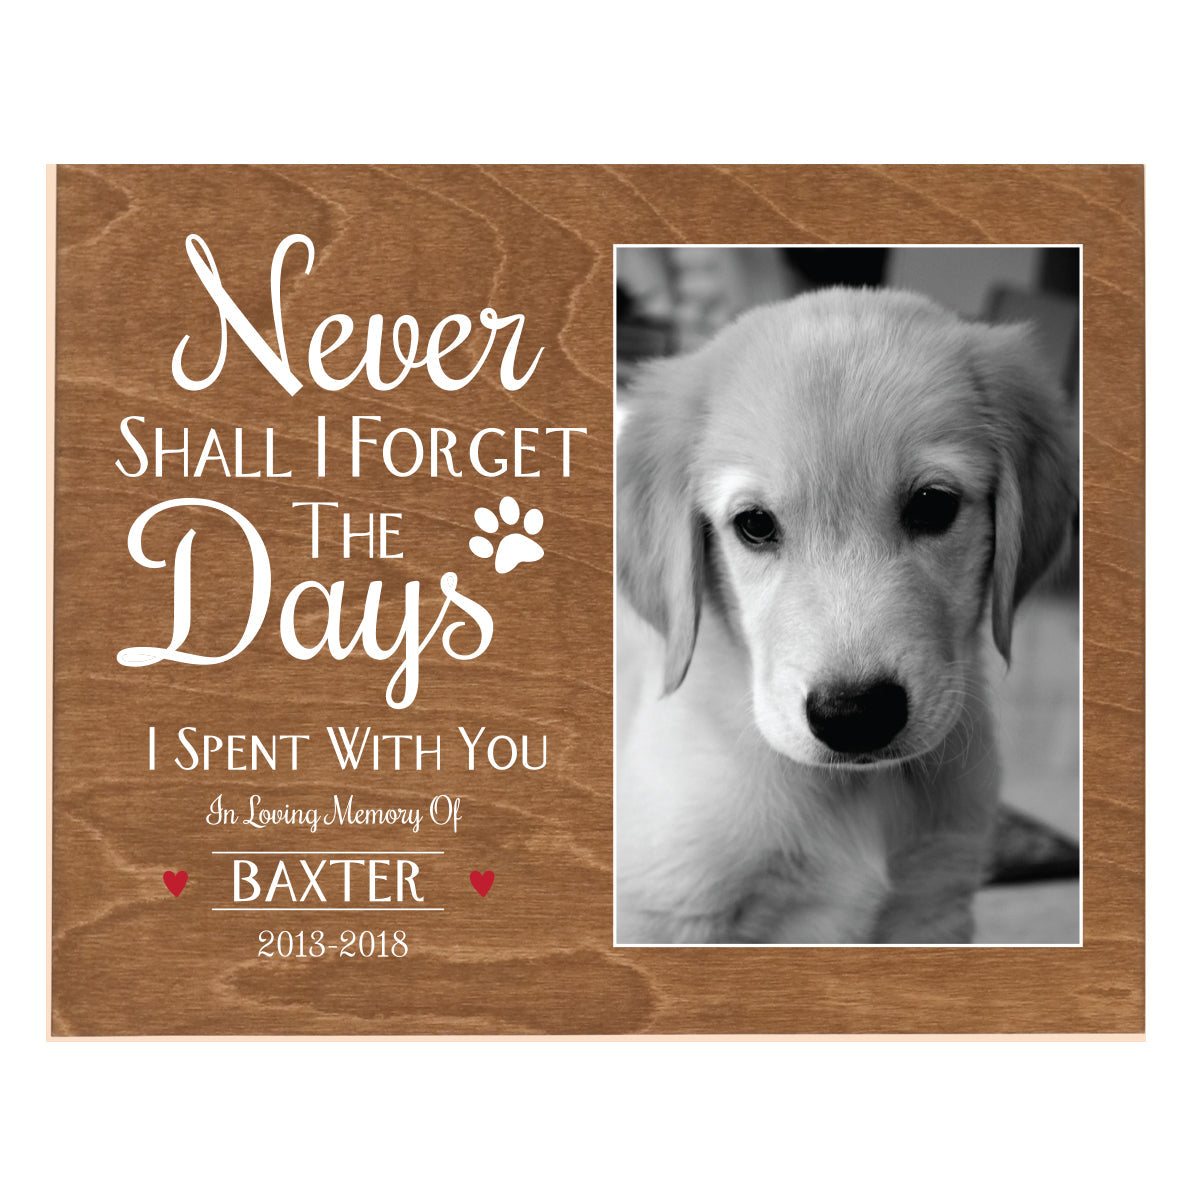 Pet Memorial Photo Wall Plaque Décor - Never Shall I Forget